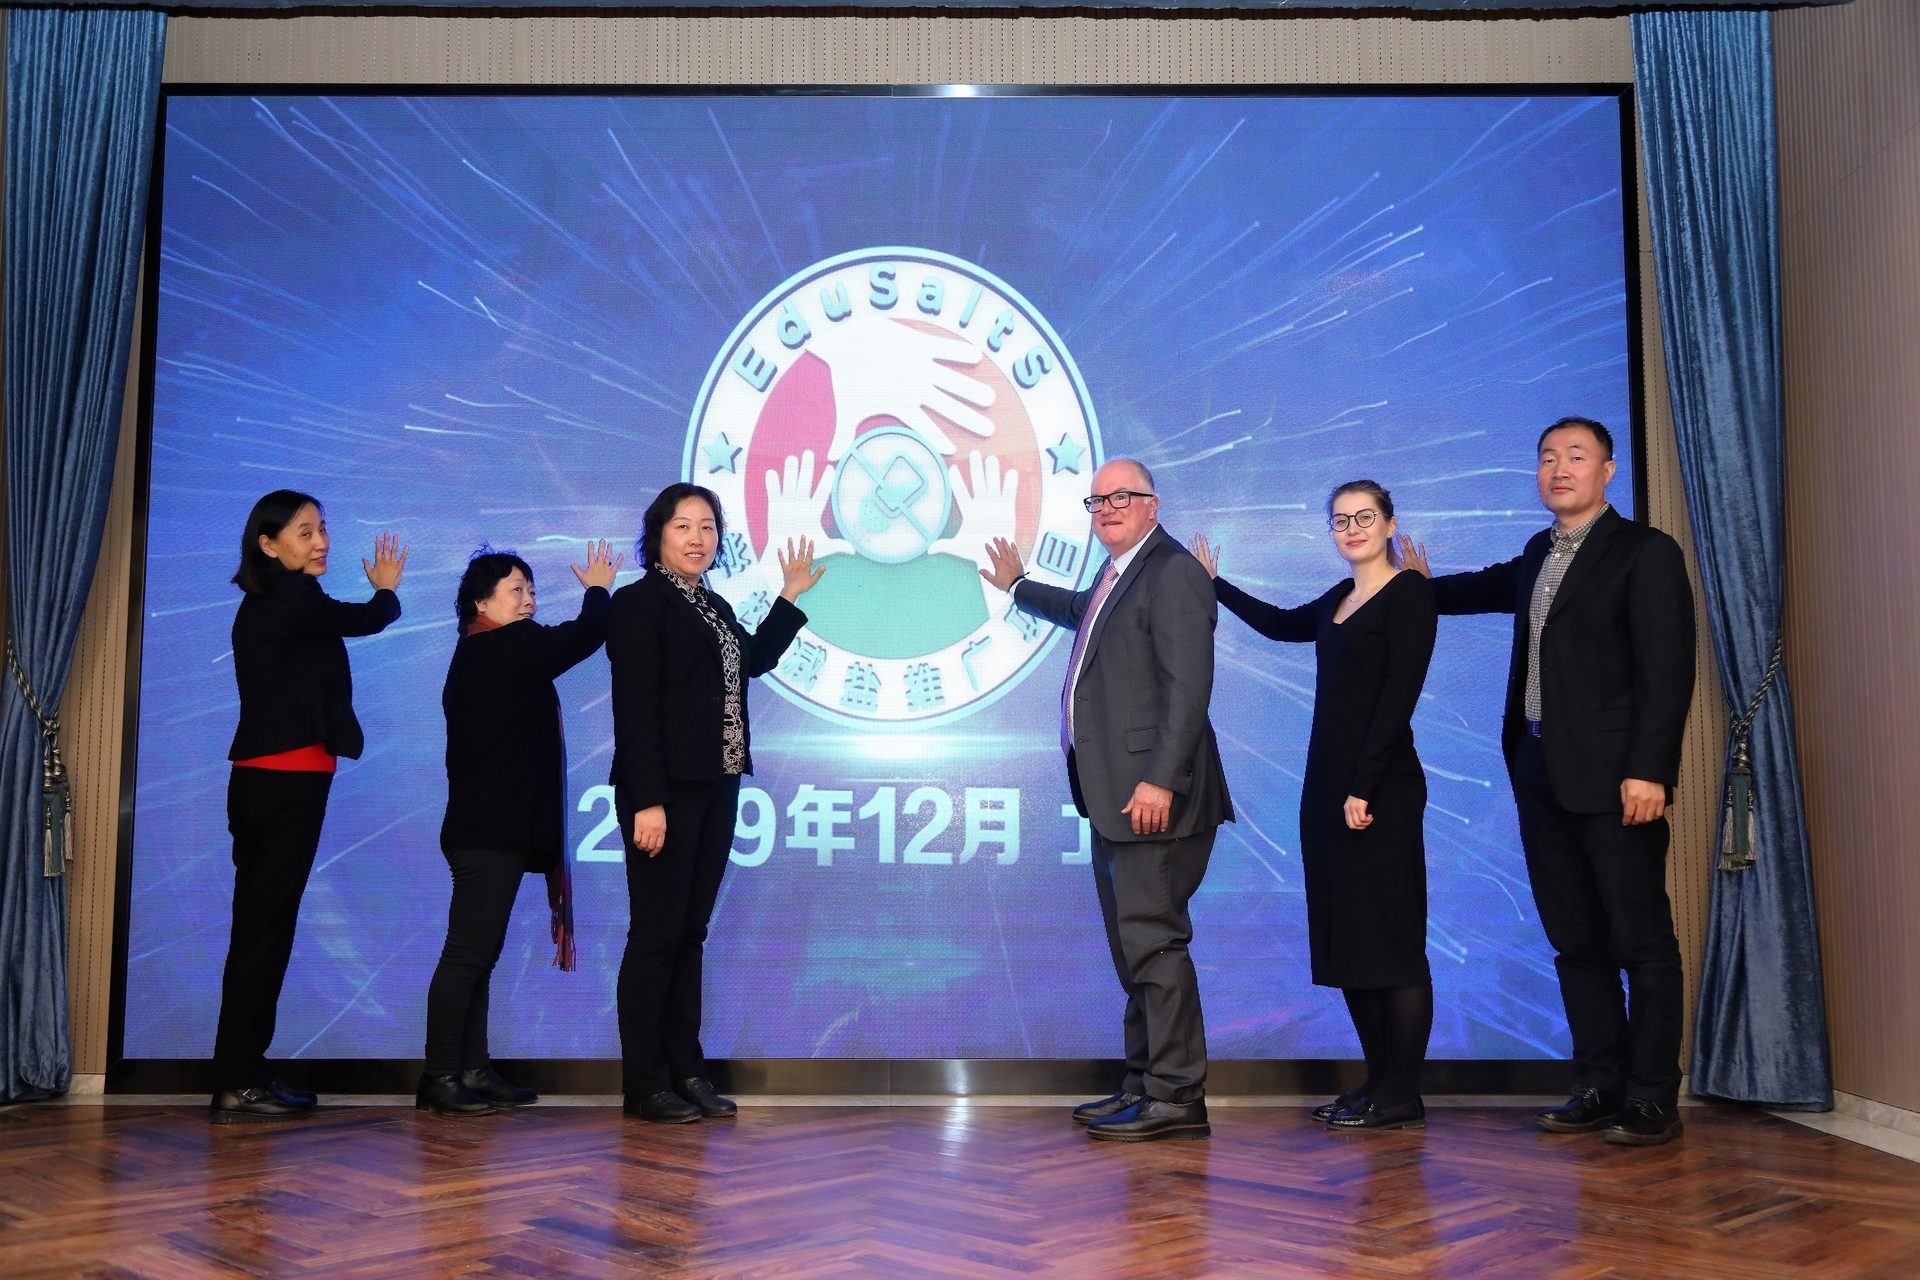 EduSaltS is launched in Beijing